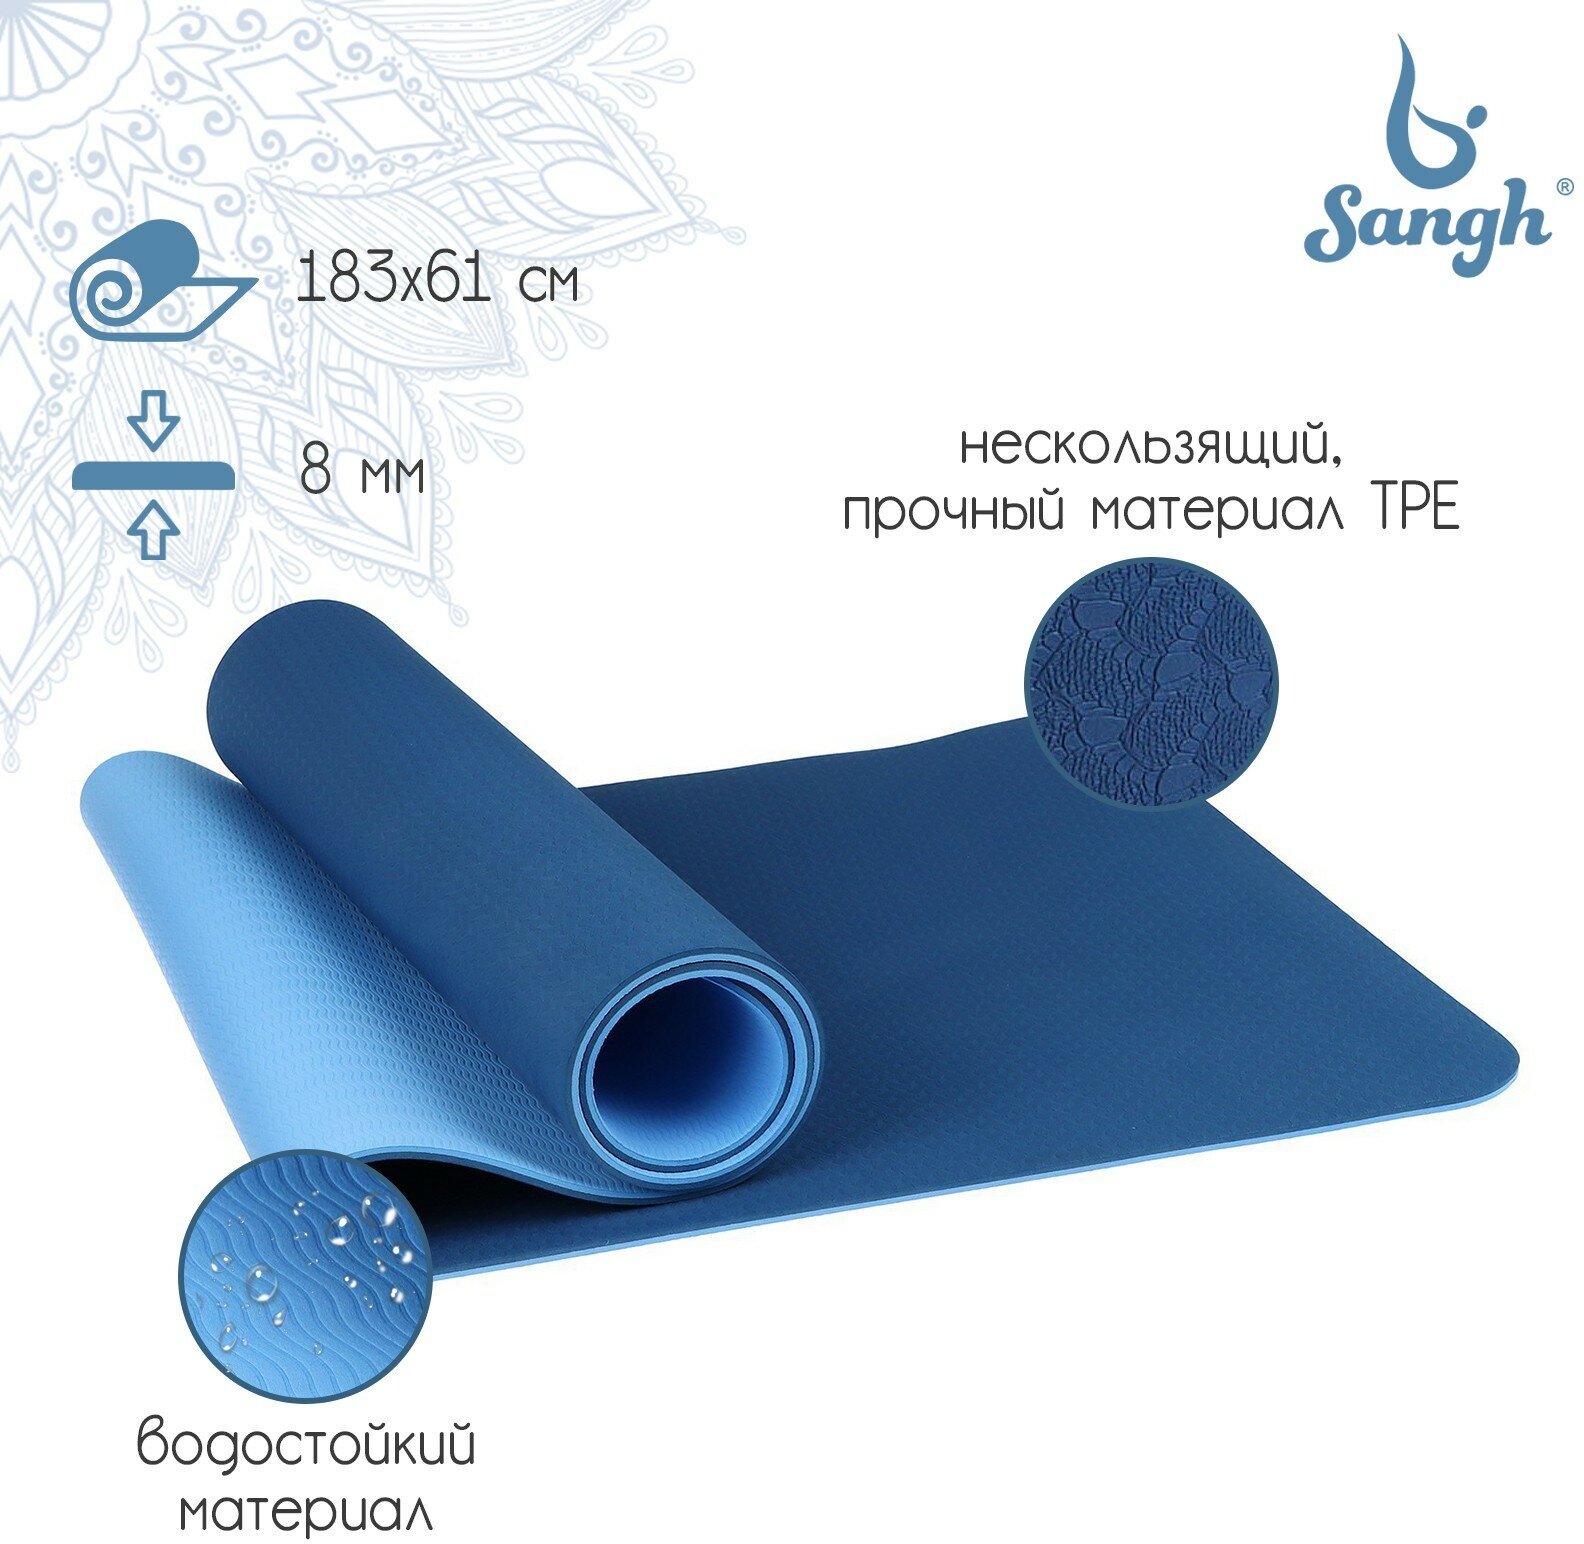 Коврик Sangh, для йоги, размер 183 х 61 х 0,8 см, двухцветный, цвет синий, голубой